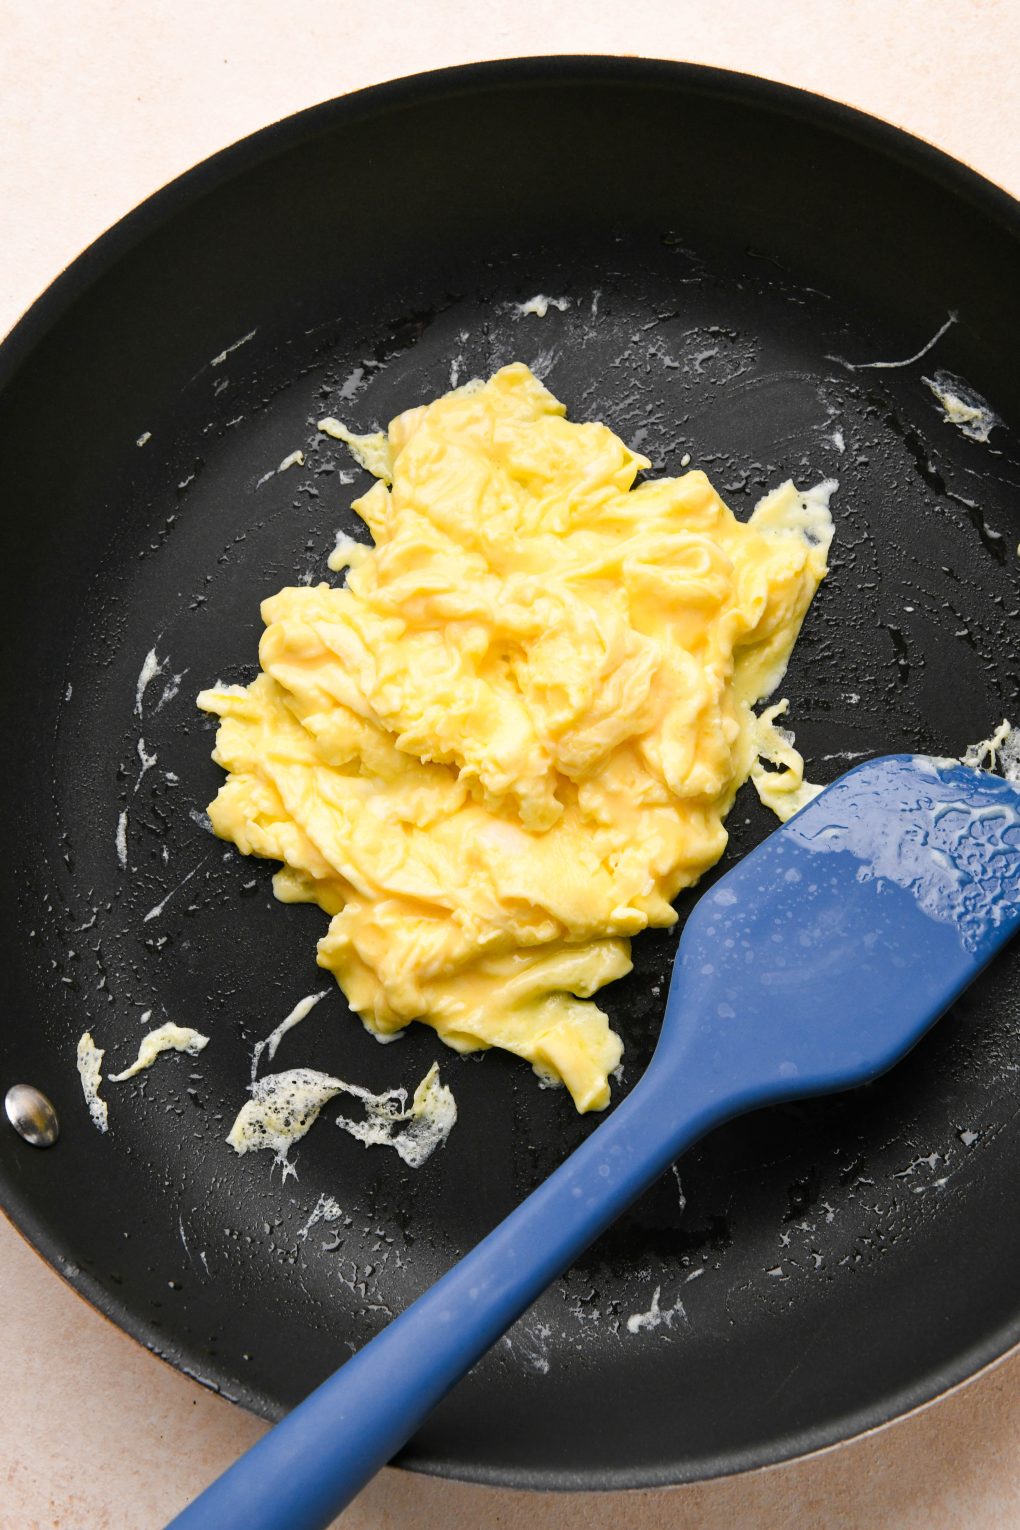 Soft scrambled eggs in a non stick skillet.